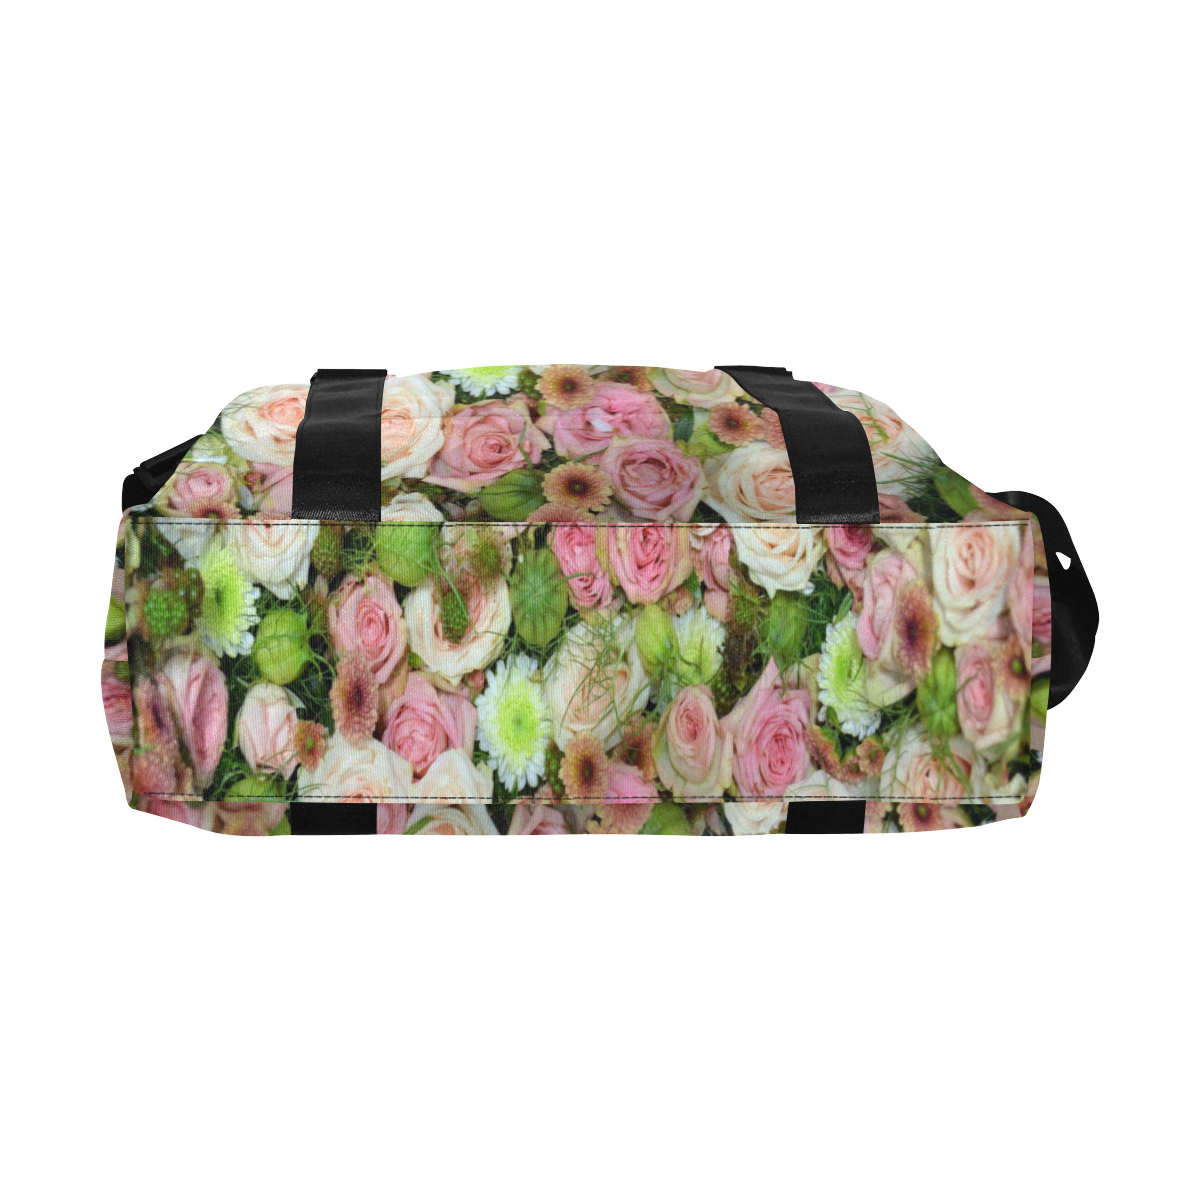 Pastel Pink Roses Large Capacity Duffle Bag (Model 1715)